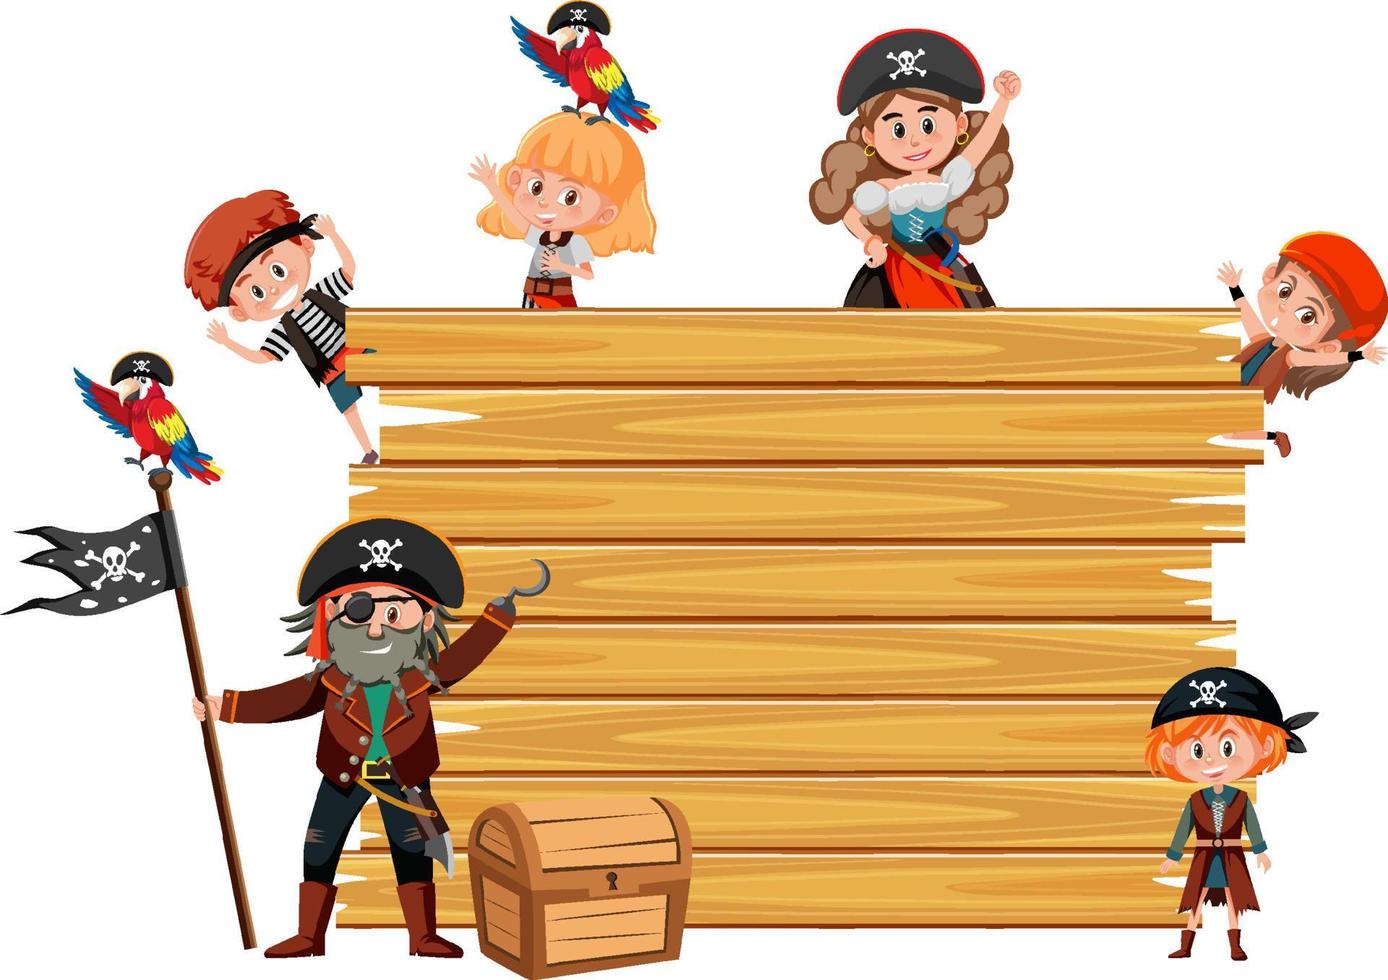 leeg houten bord met veel stripfiguren voor piratenkinderen vector